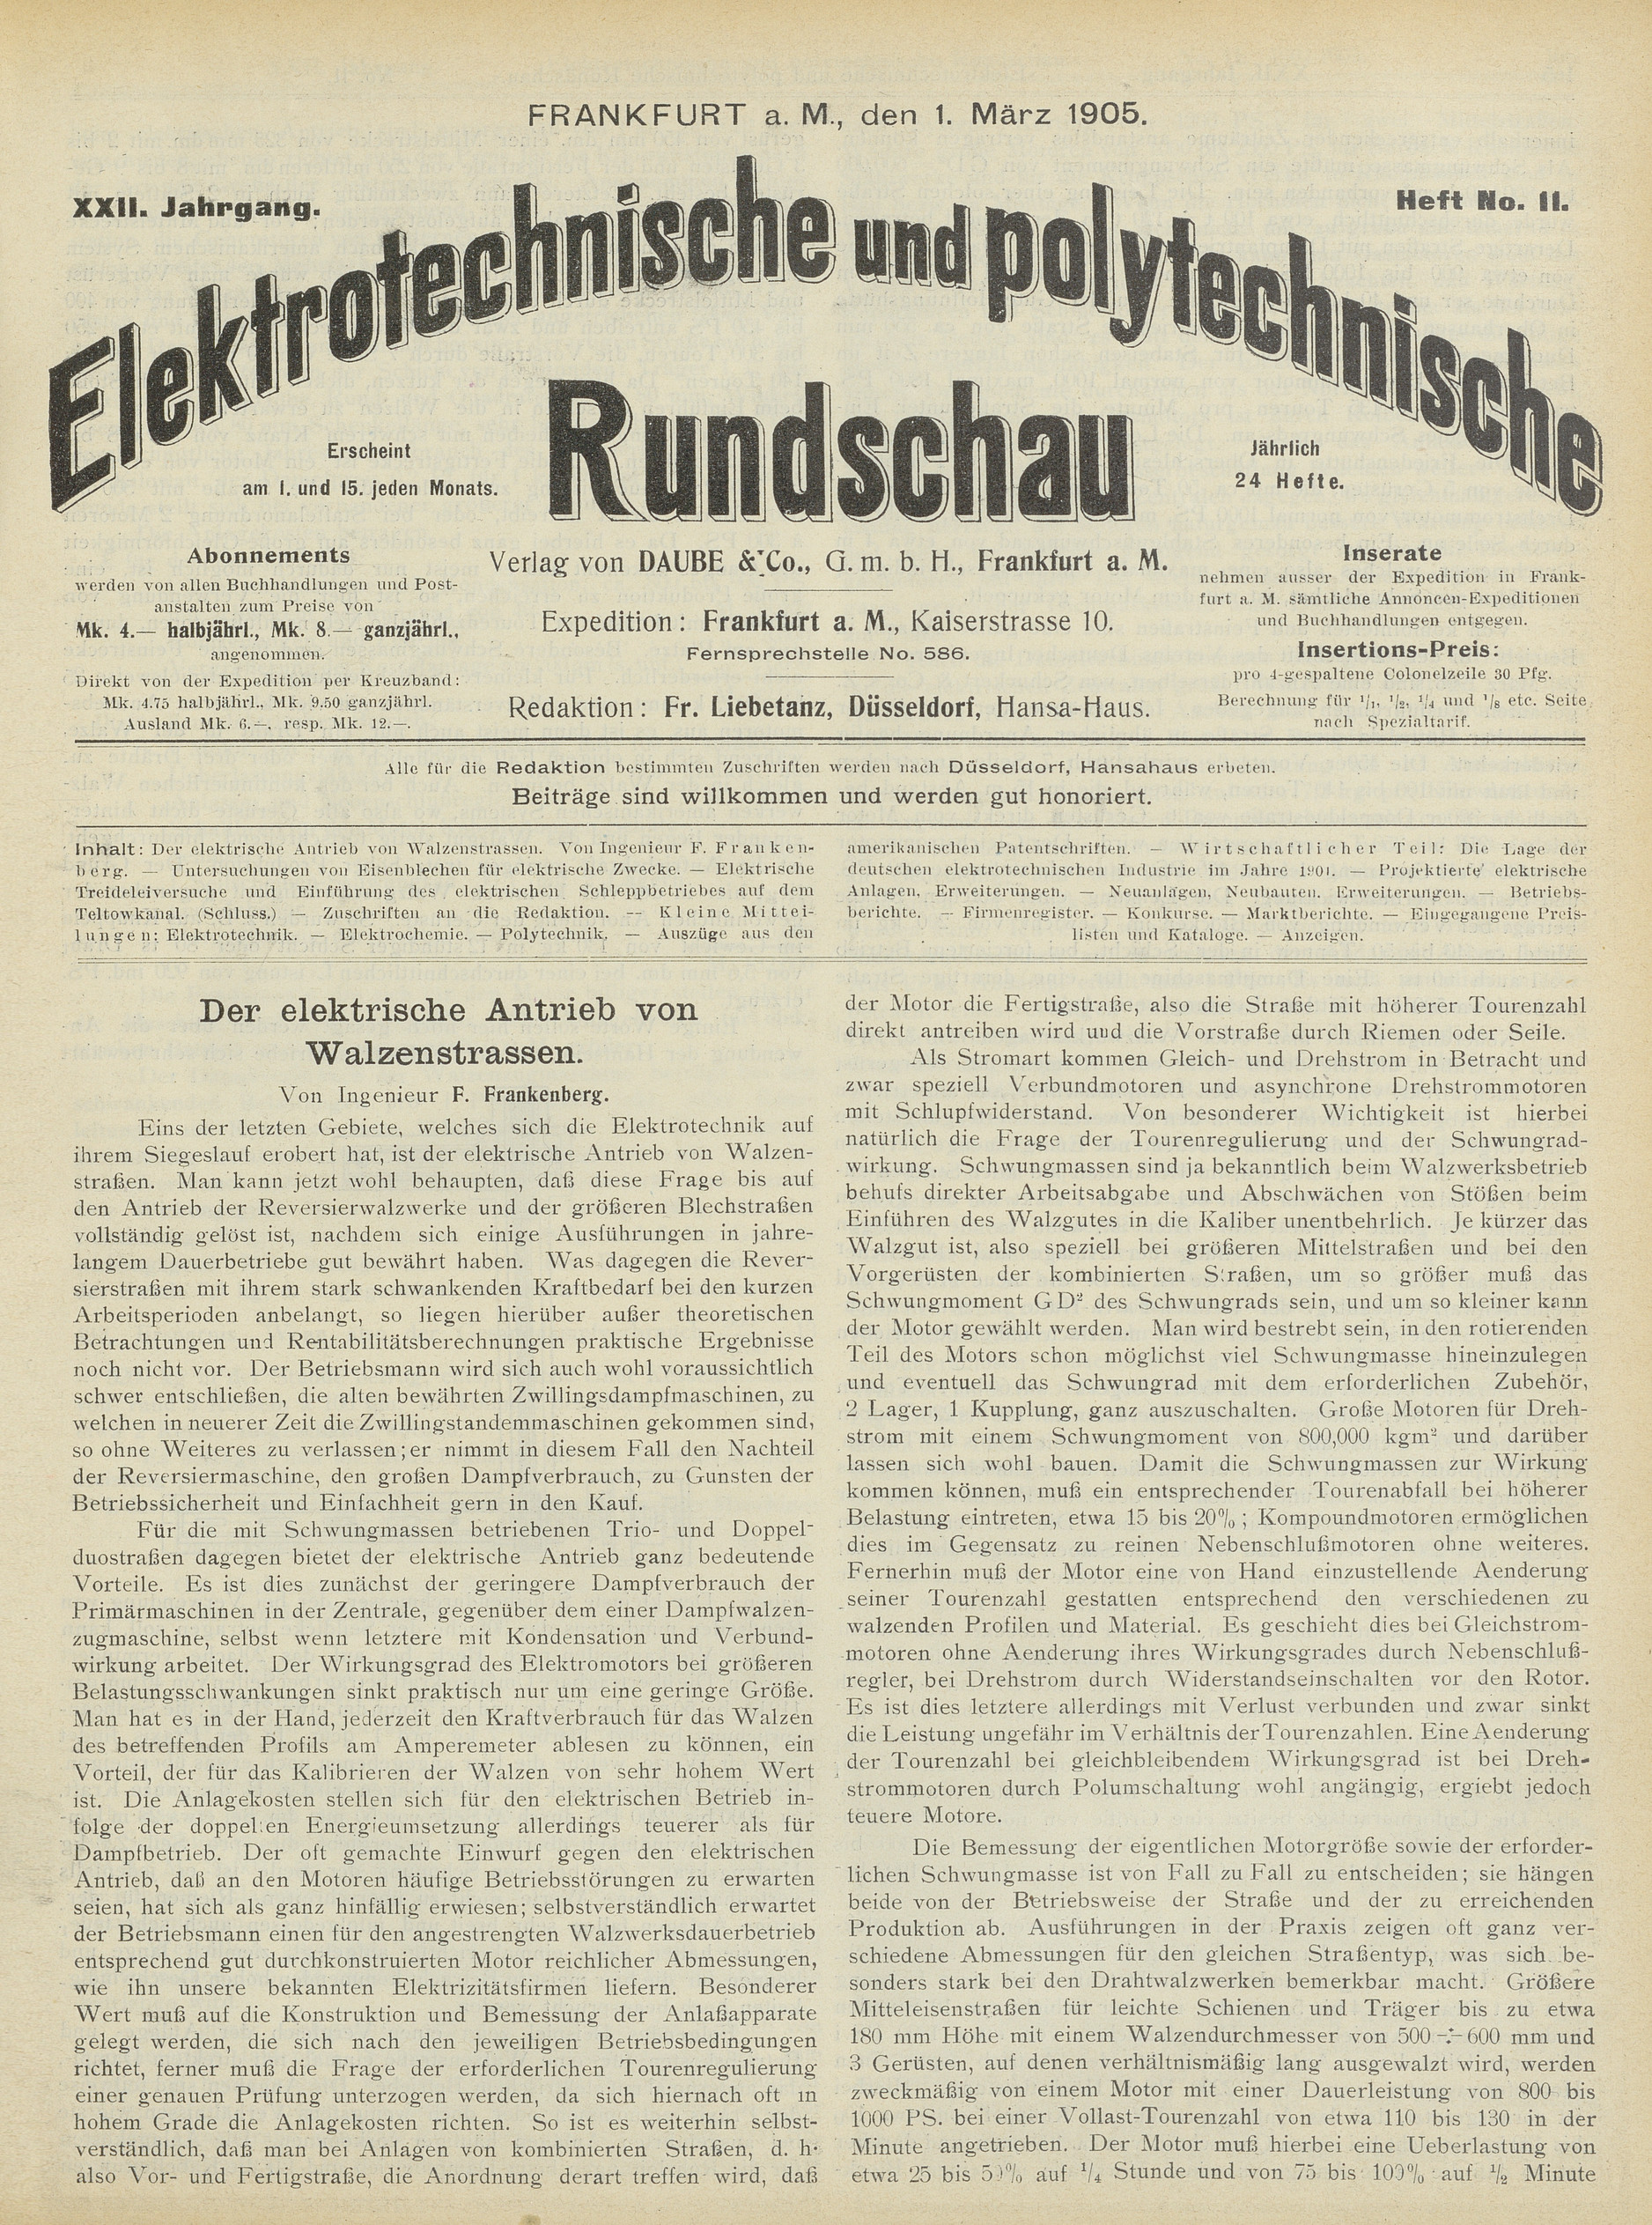 Elektrotechnische und polytechnische Rundschau, XXII. Jahrgang, Heft No. 11